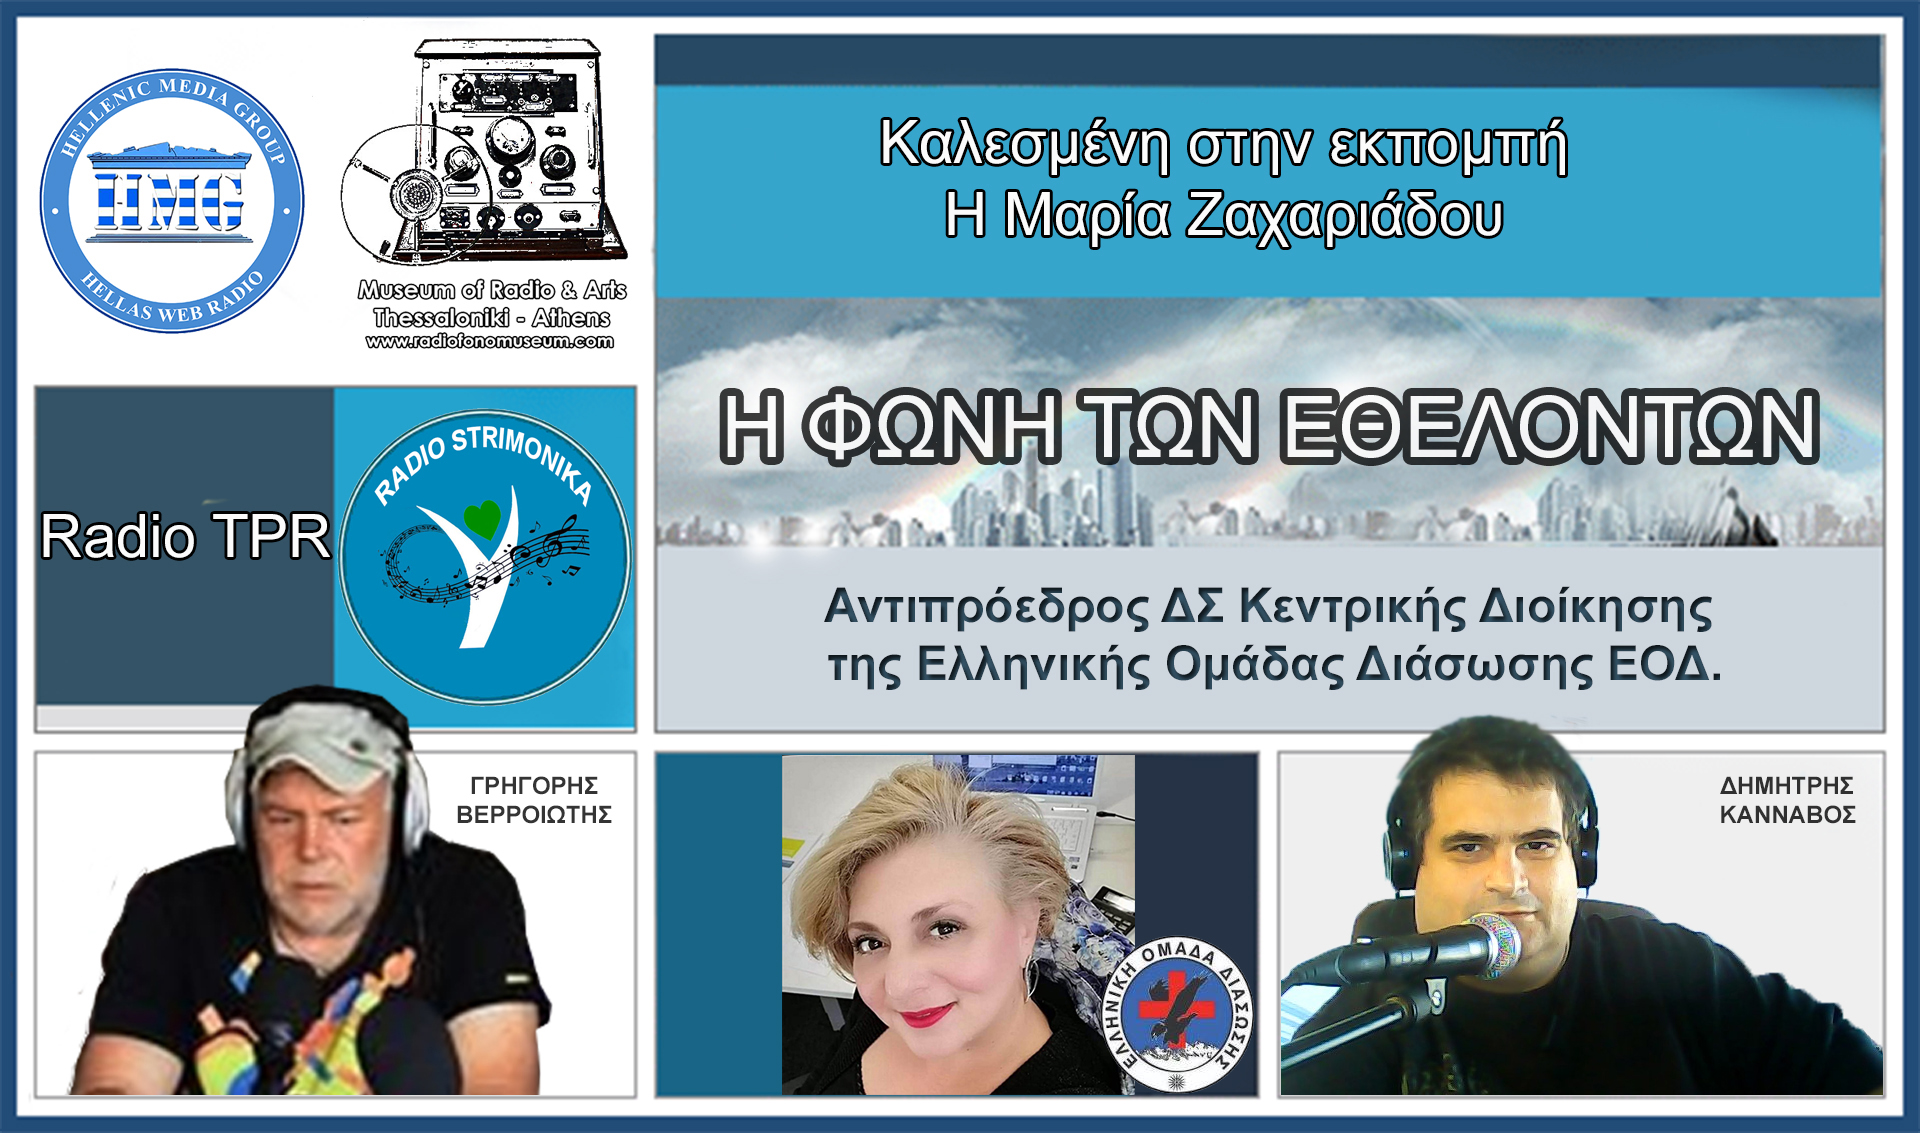 Η «Φωνή των Εθελοντών»Καλεσμένη της εκπομπής η Μαρία Ζαχαριάδου Αντιπρόεδρος ΔΣ Κεντρικής Διοίκησης της Ελληνικής Ομάδας Διάσωσης ΕΟΔ.